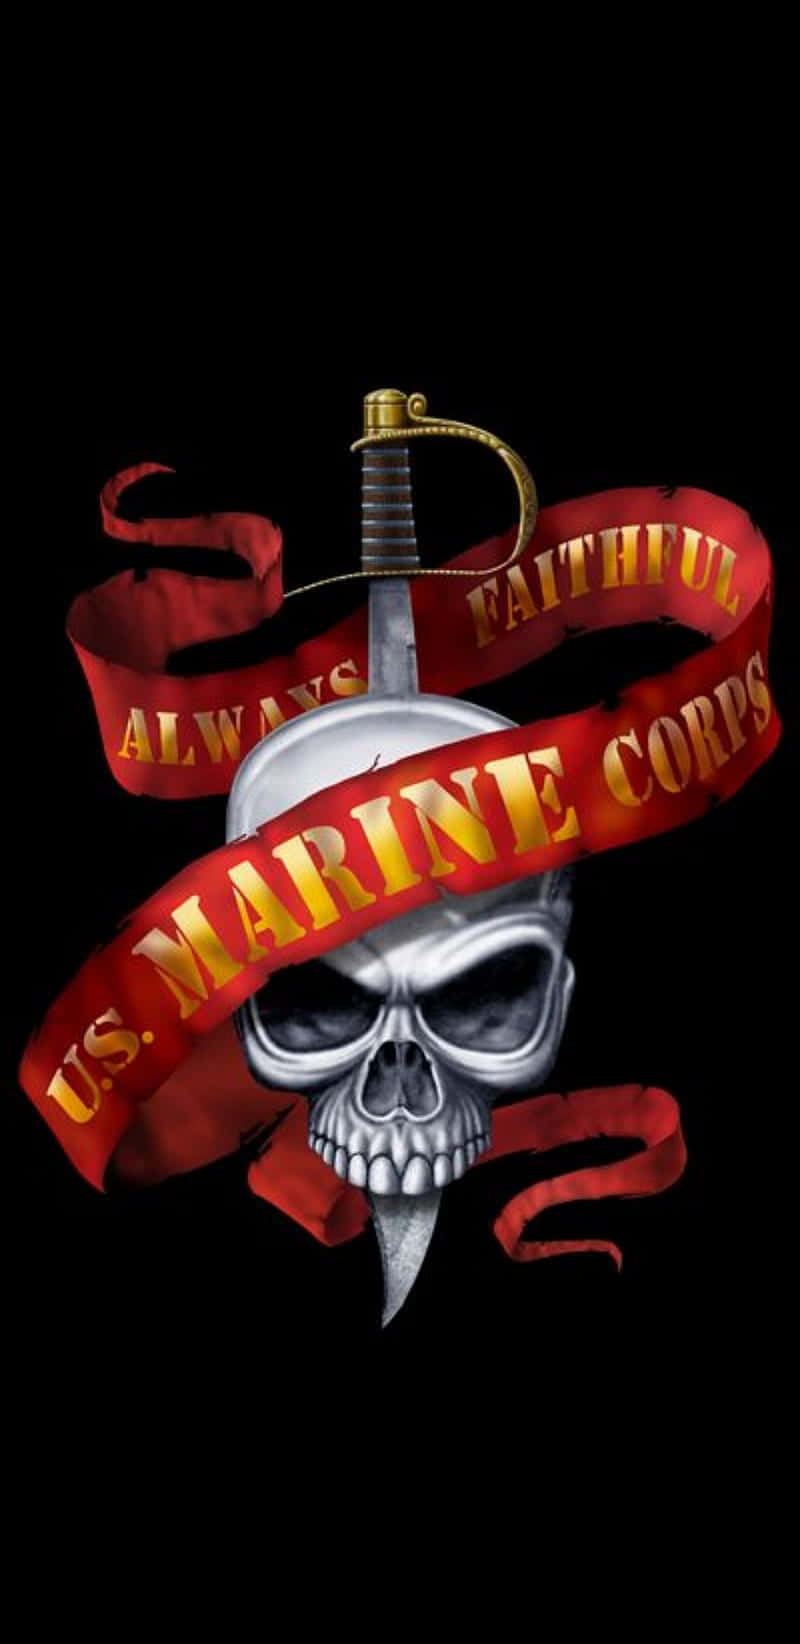 Unteléfono Del Cuerpo De Marines De Los Estados Unidos. Fondo de pantalla